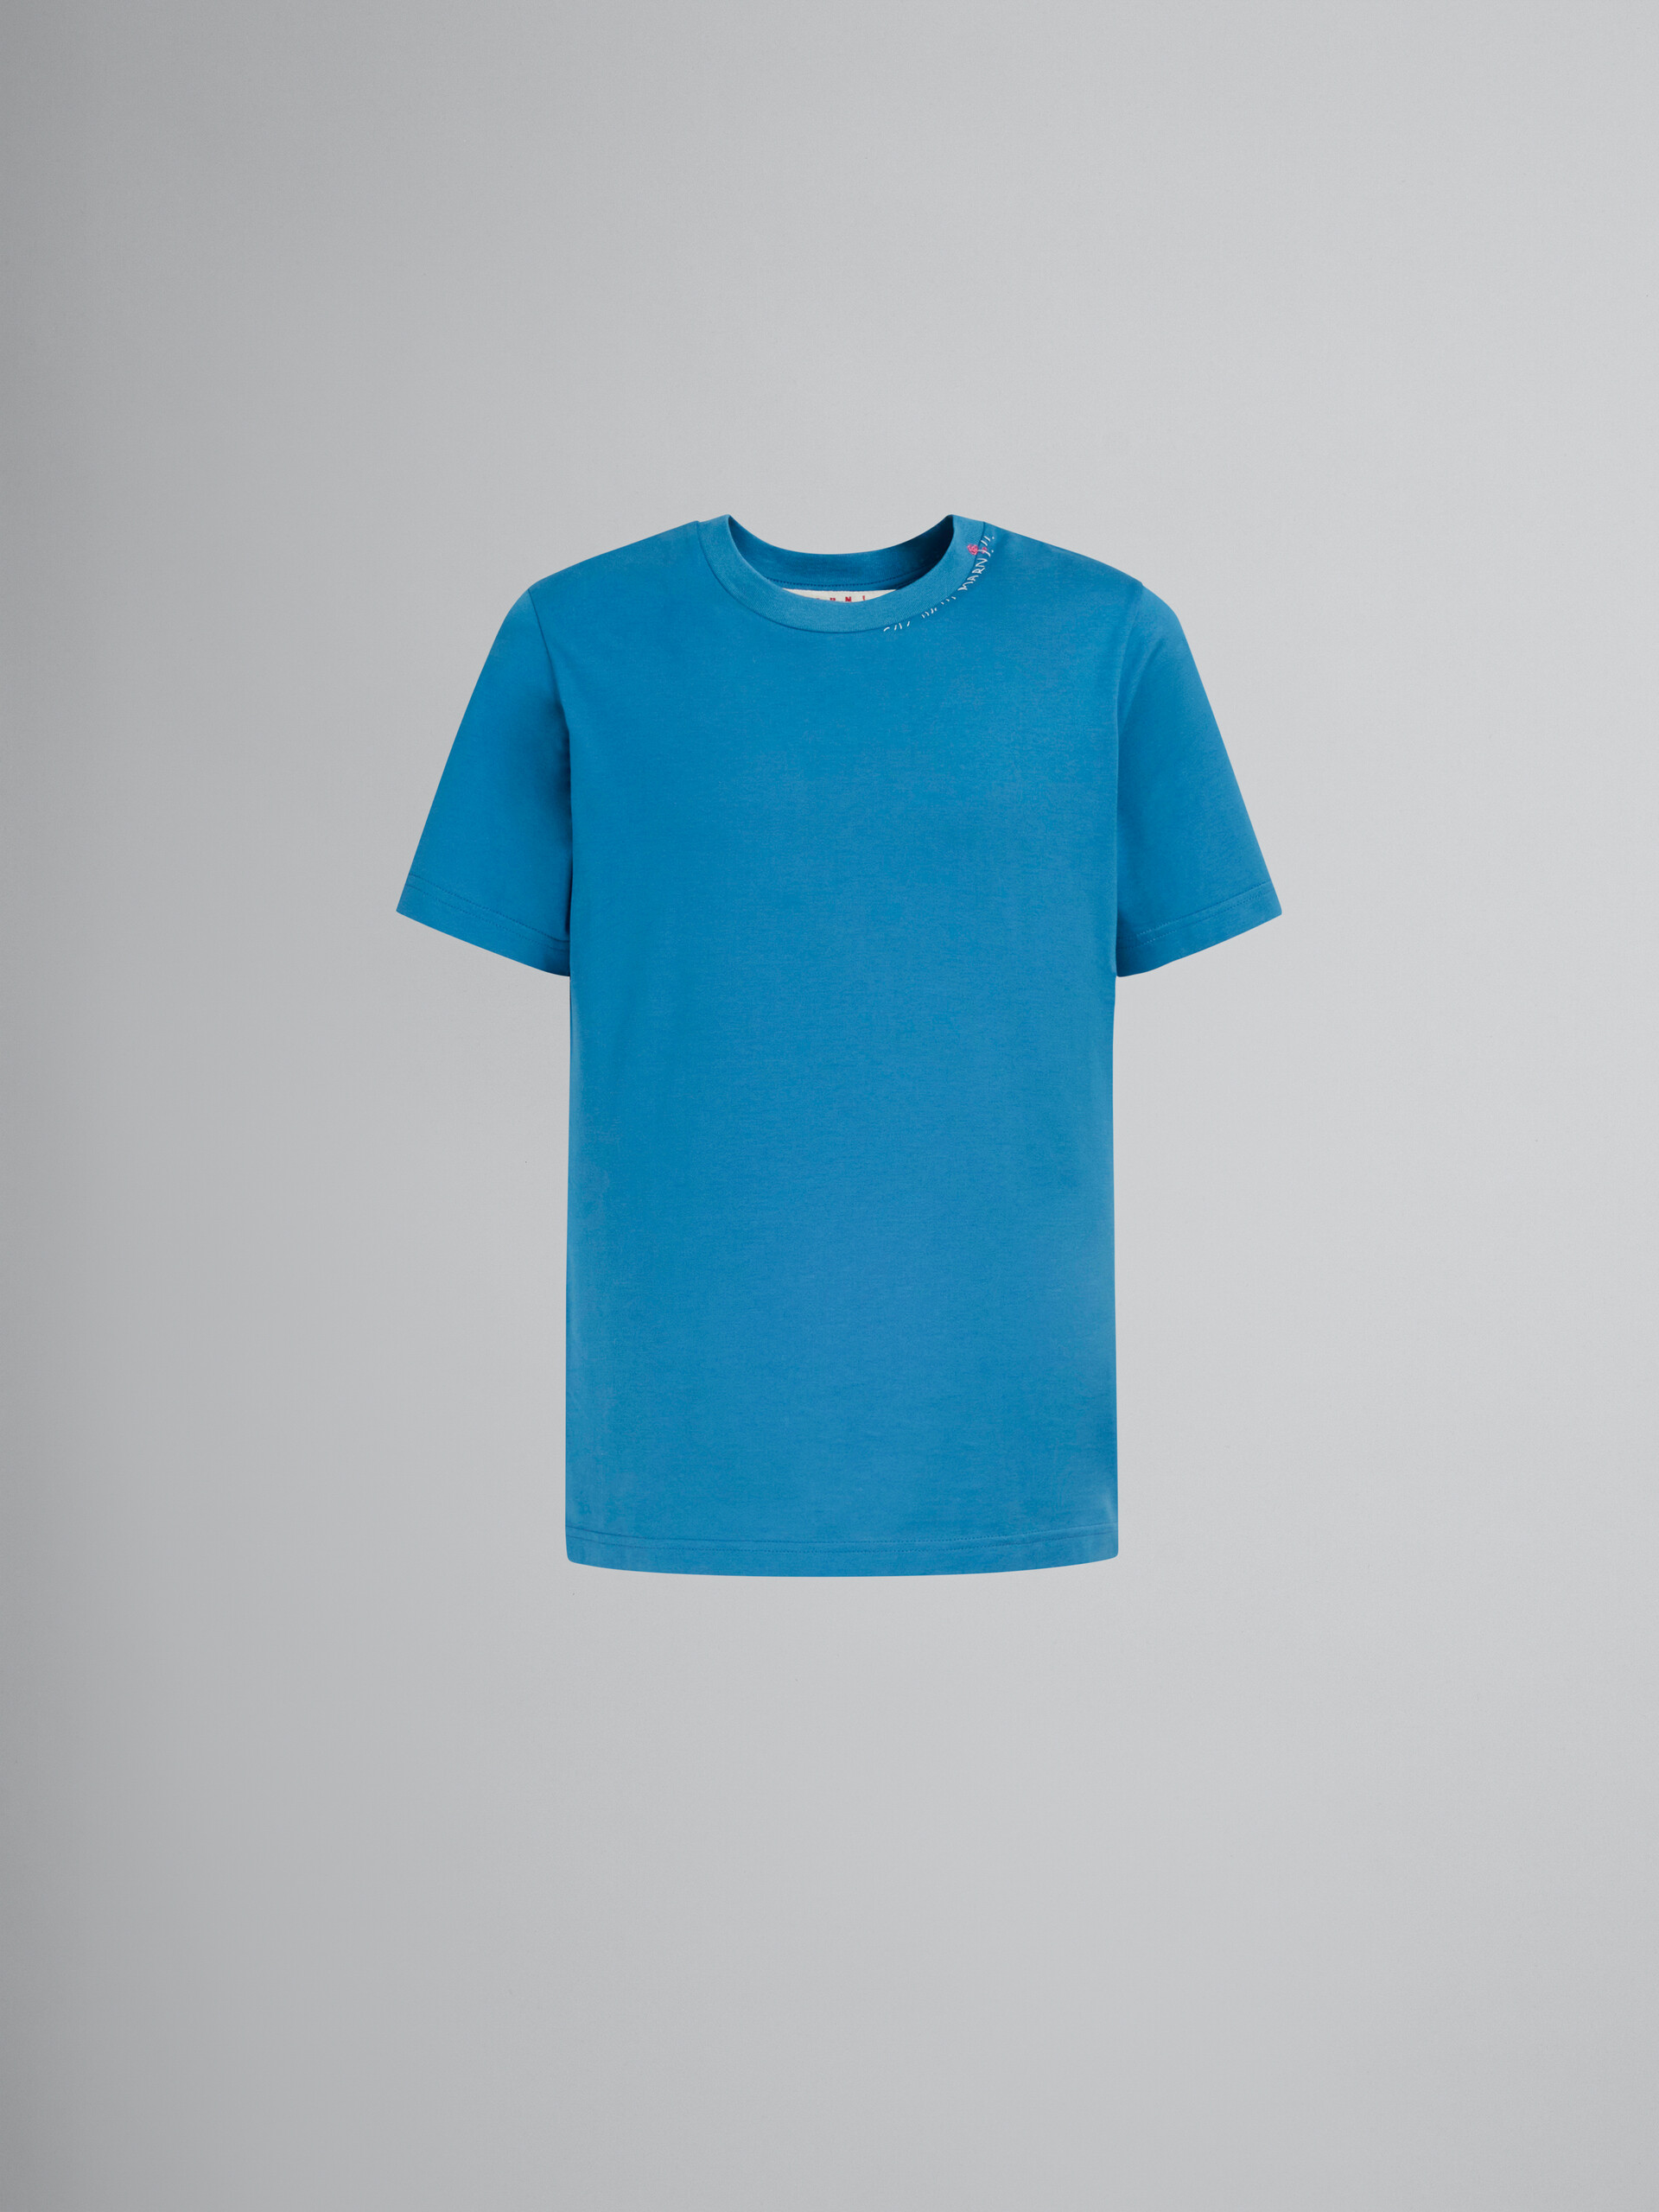 T-shirt en coton bleu avec imprimé fleur au dos - T-shirts - Image 1